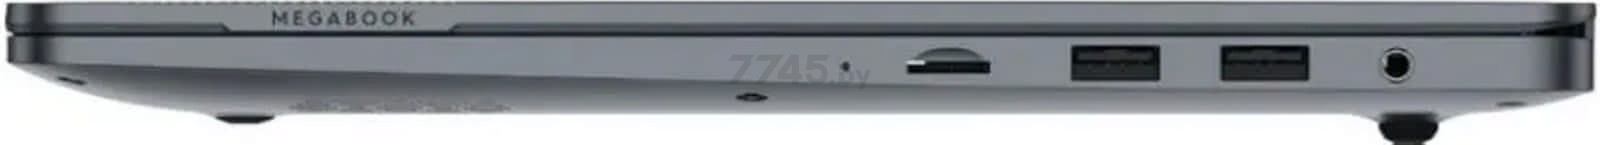 Ноутбук TECNO Megabook T1 2023 AMD 4894947004926 - Фото 7